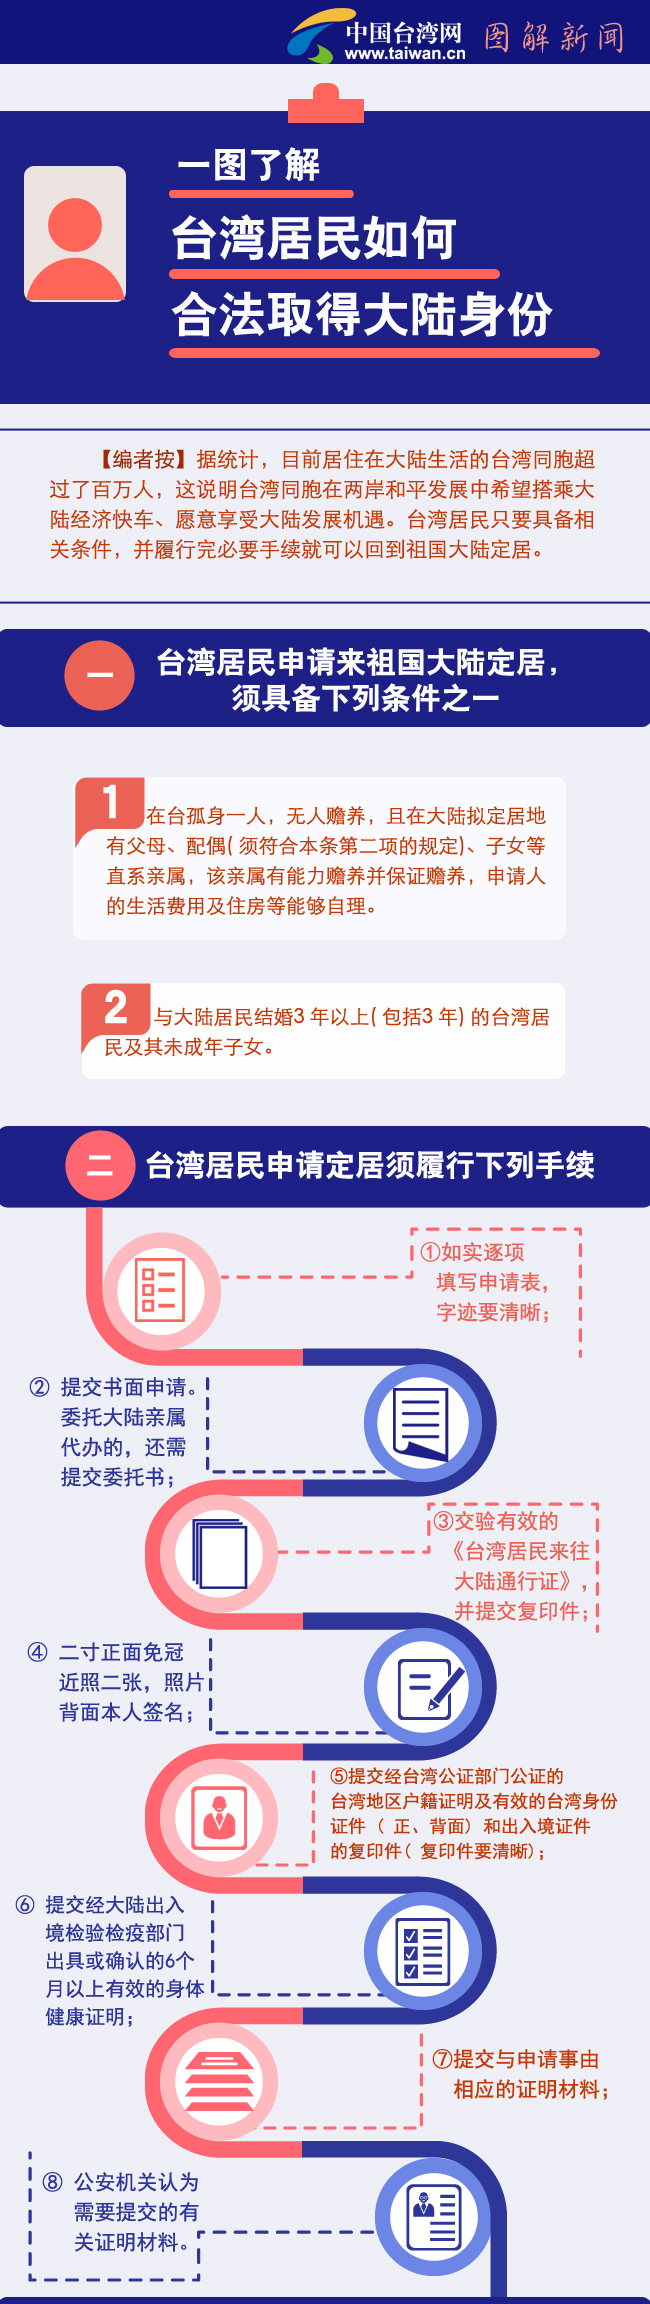 一图了解台湾居民如何合法取得大陆身份